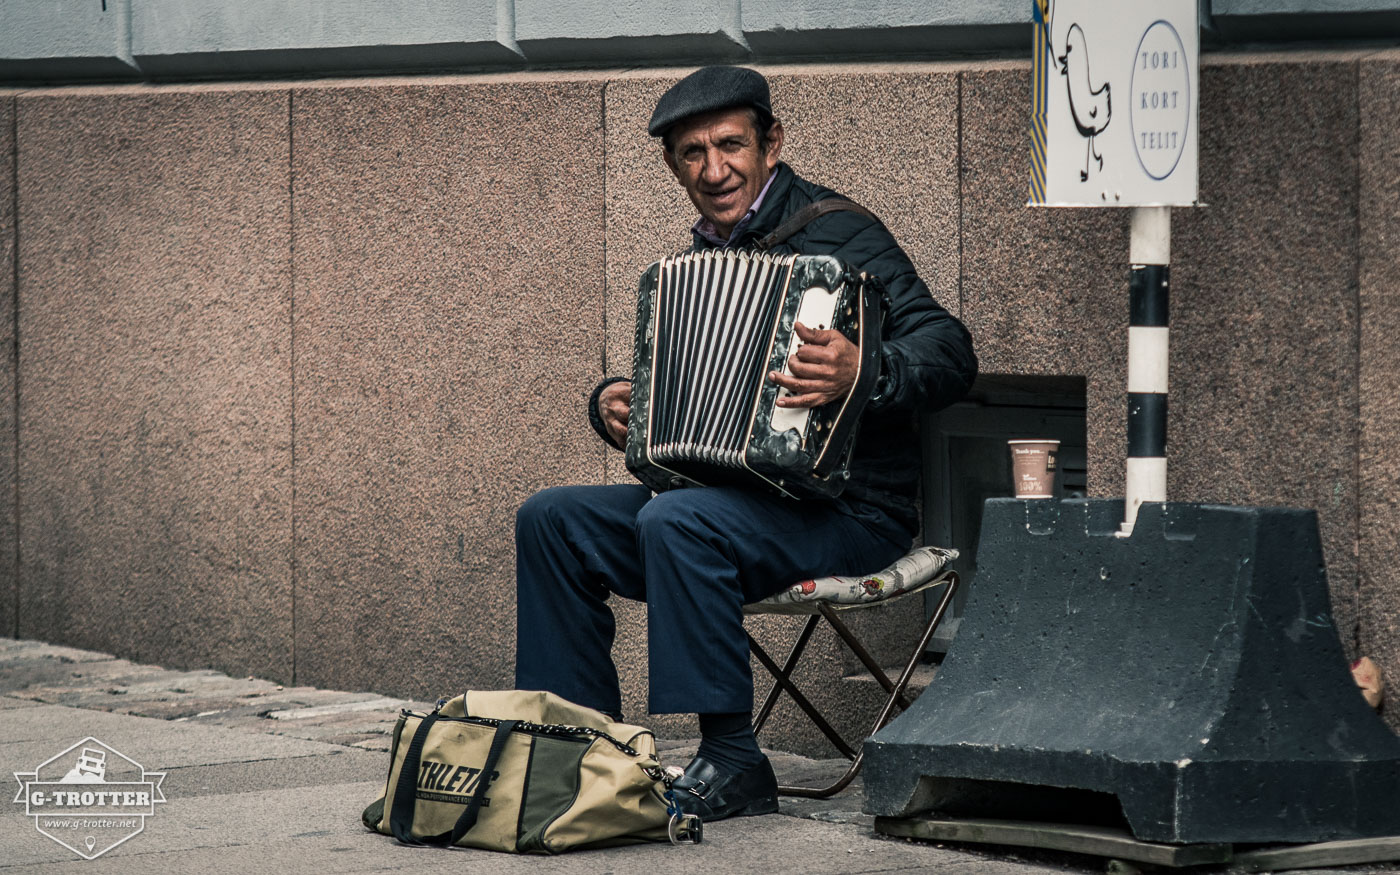 Street musician in Helsinki.